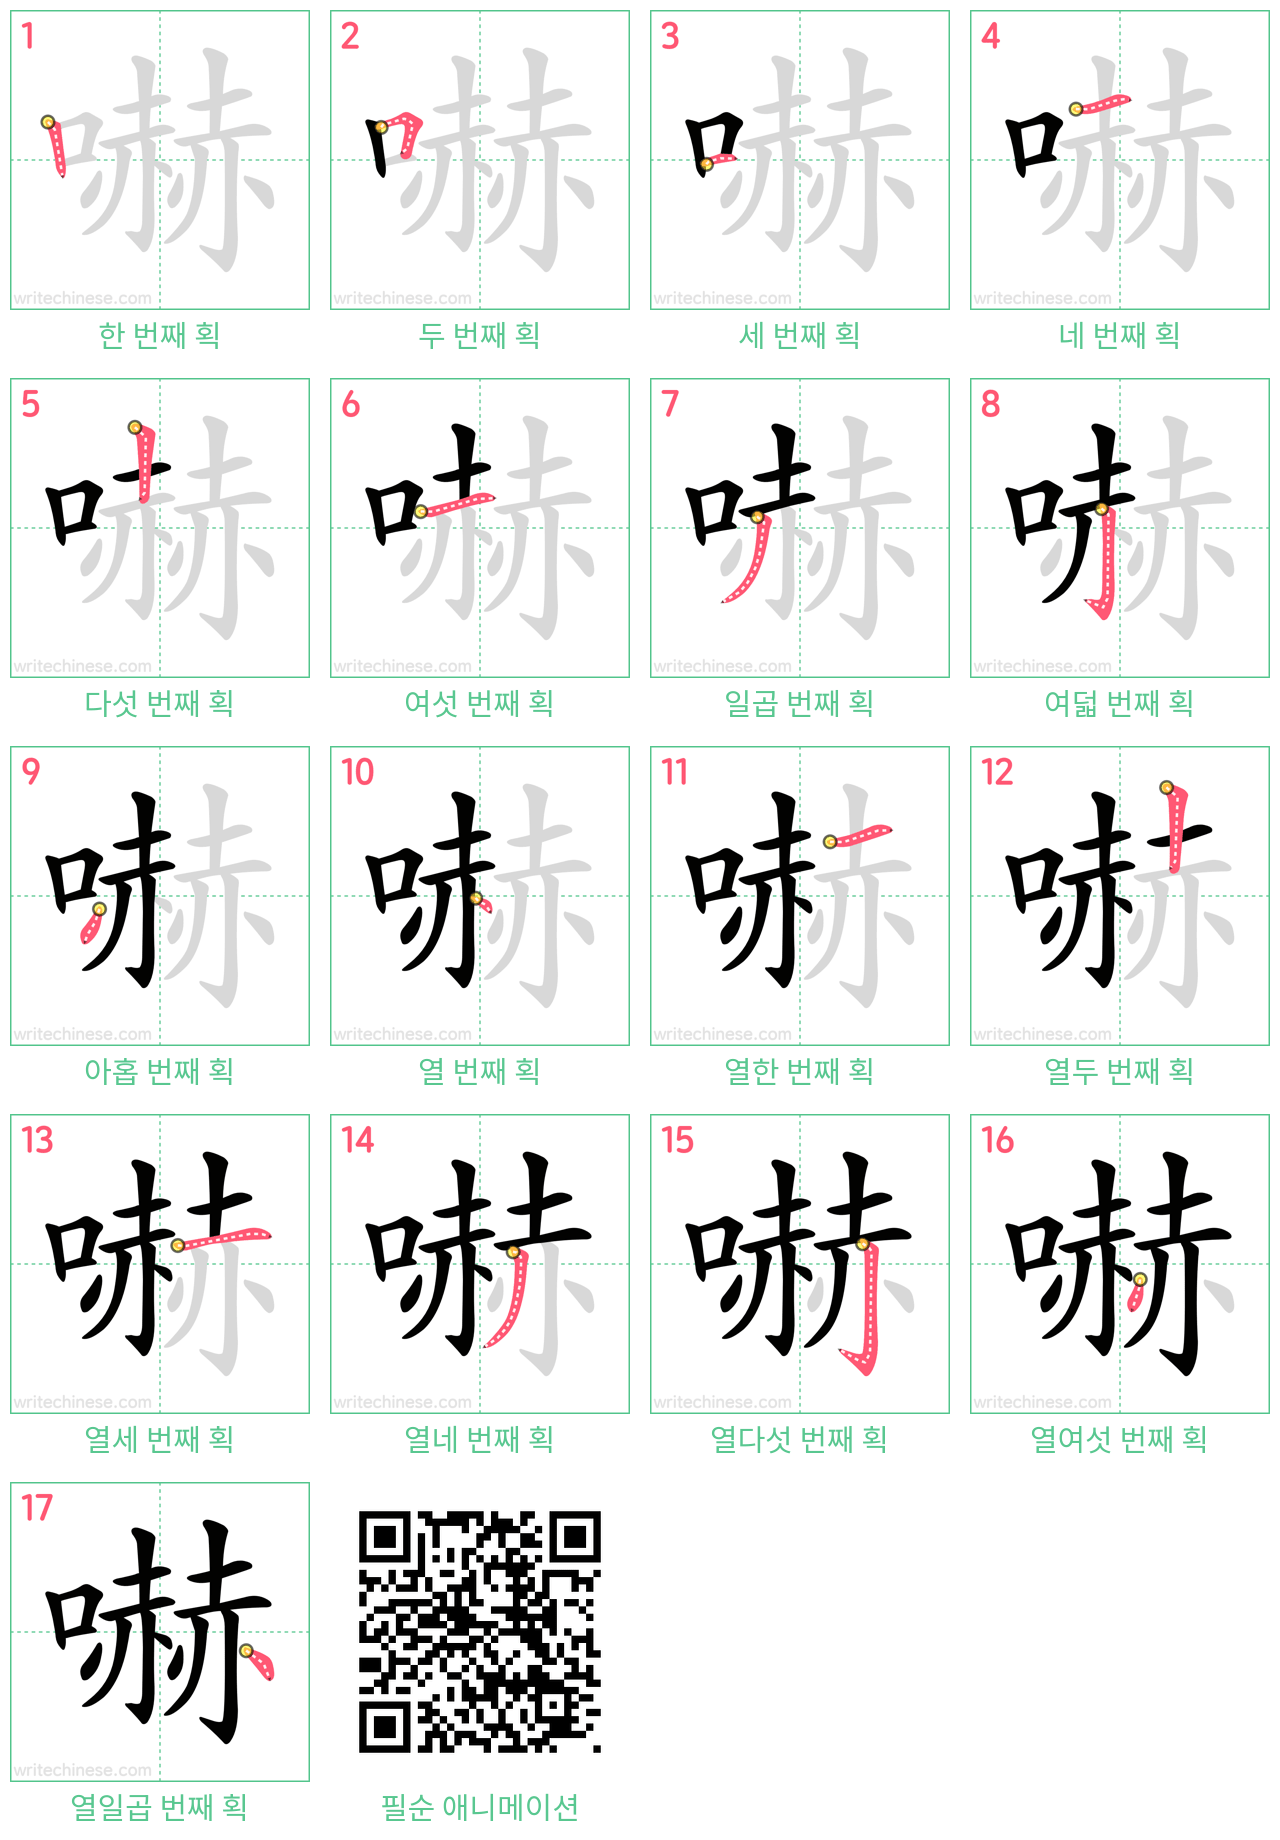 嚇 step-by-step stroke order diagrams